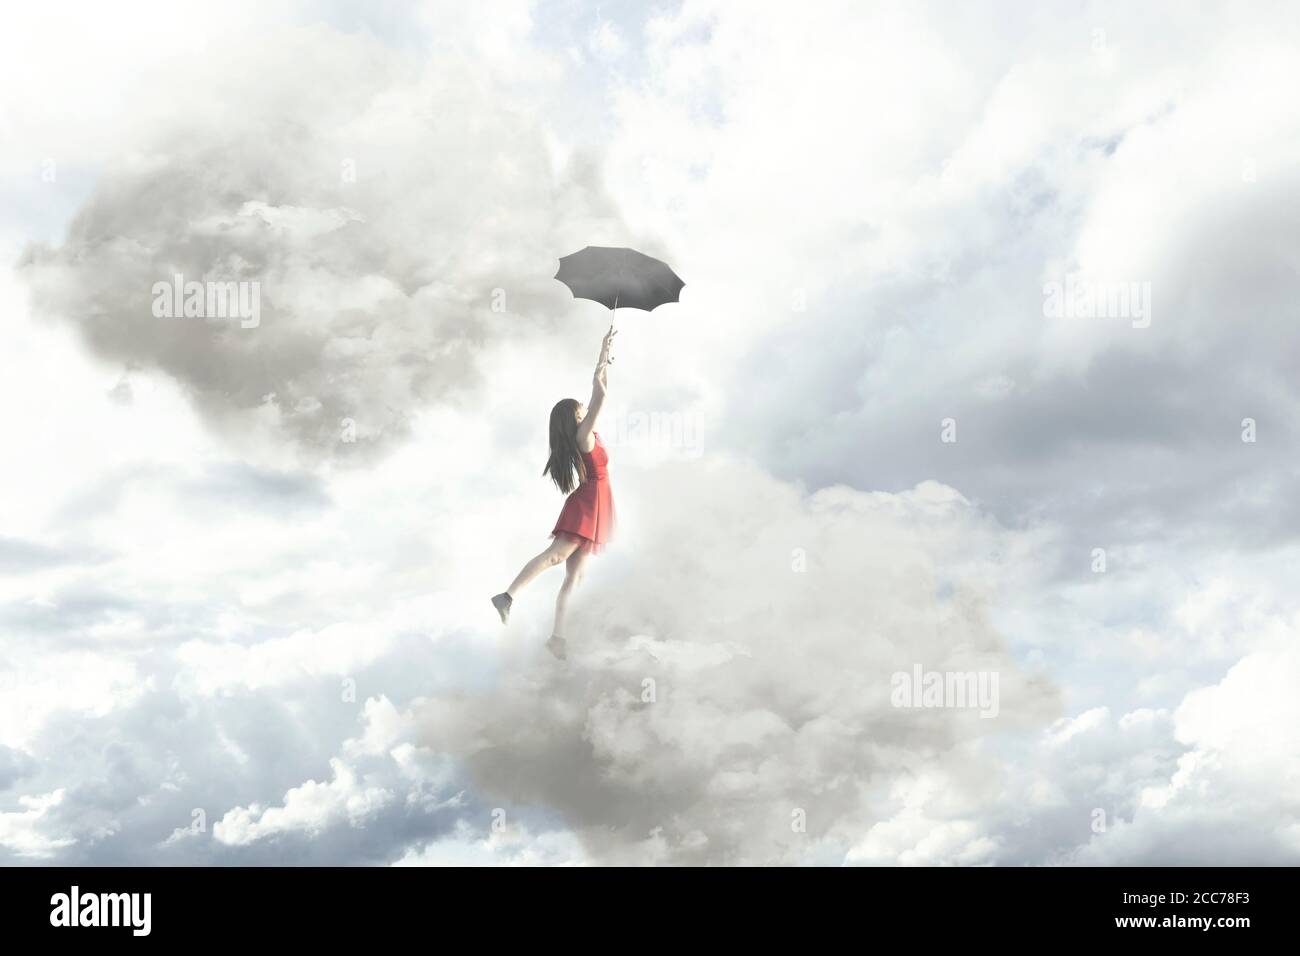 Moment surréaliste d'une femme élégante volant au milieu des nuages accrochés à son parapluie Banque D'Images